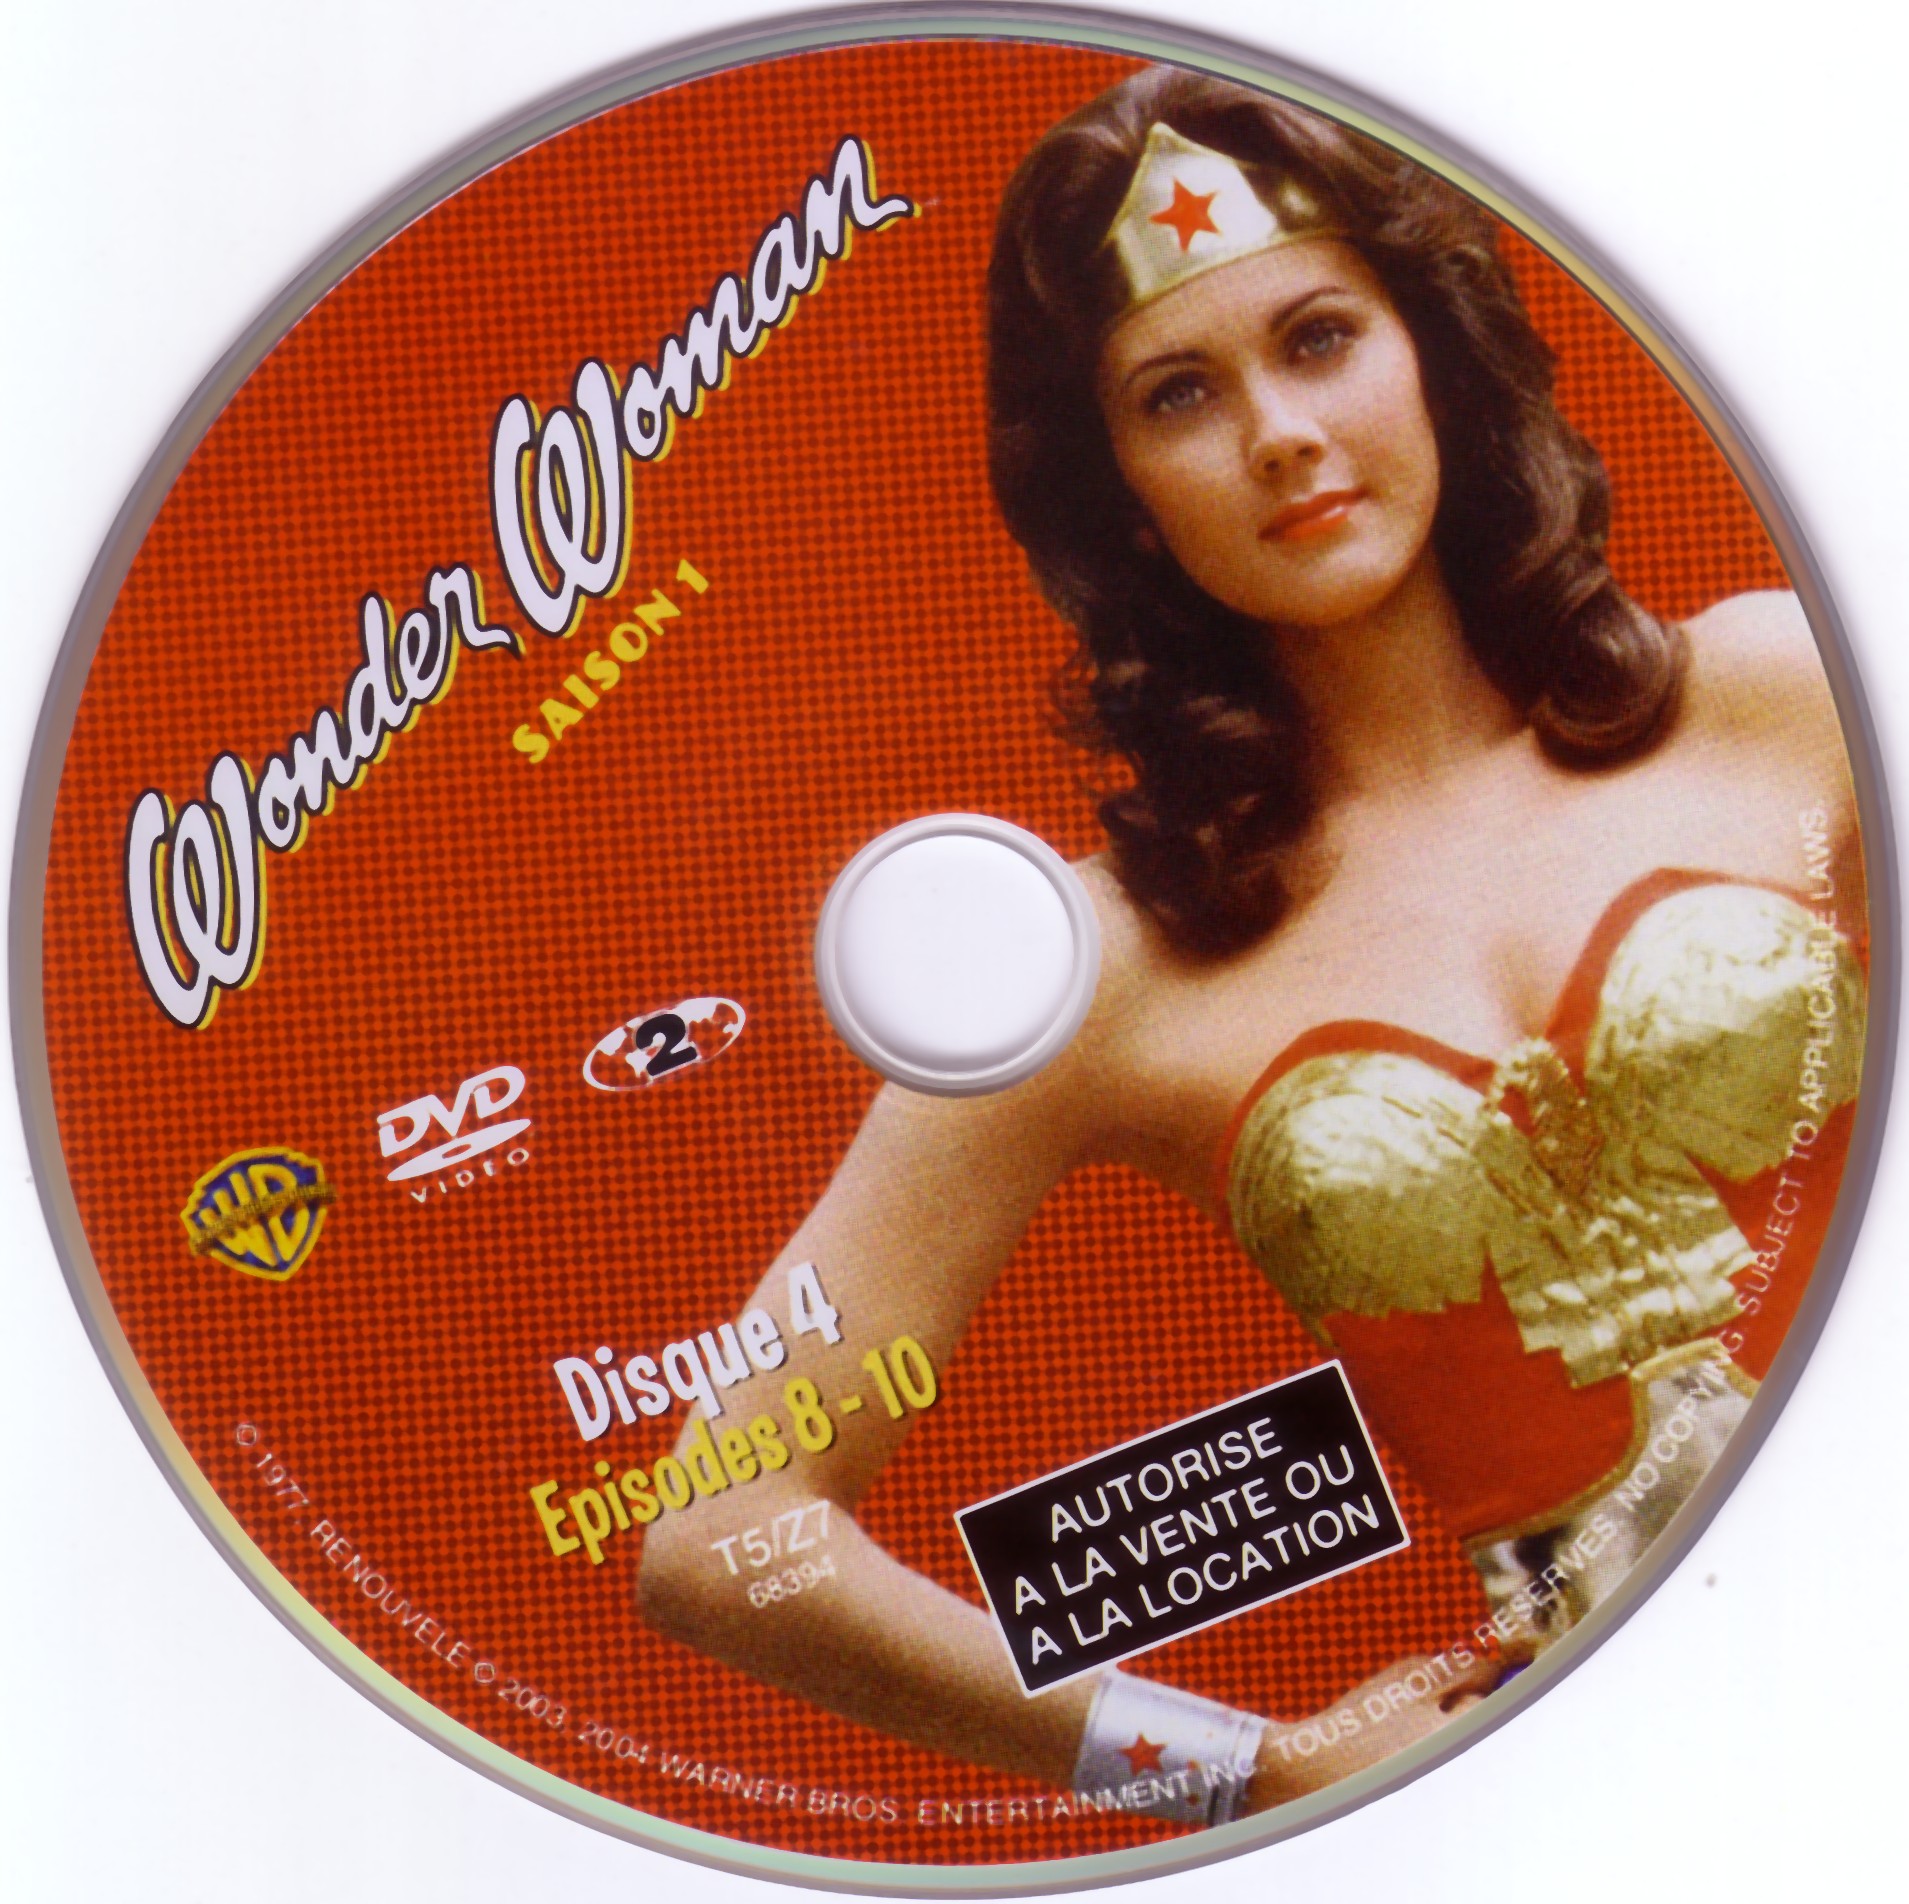 Wonder Woman saison 1 DVD 4